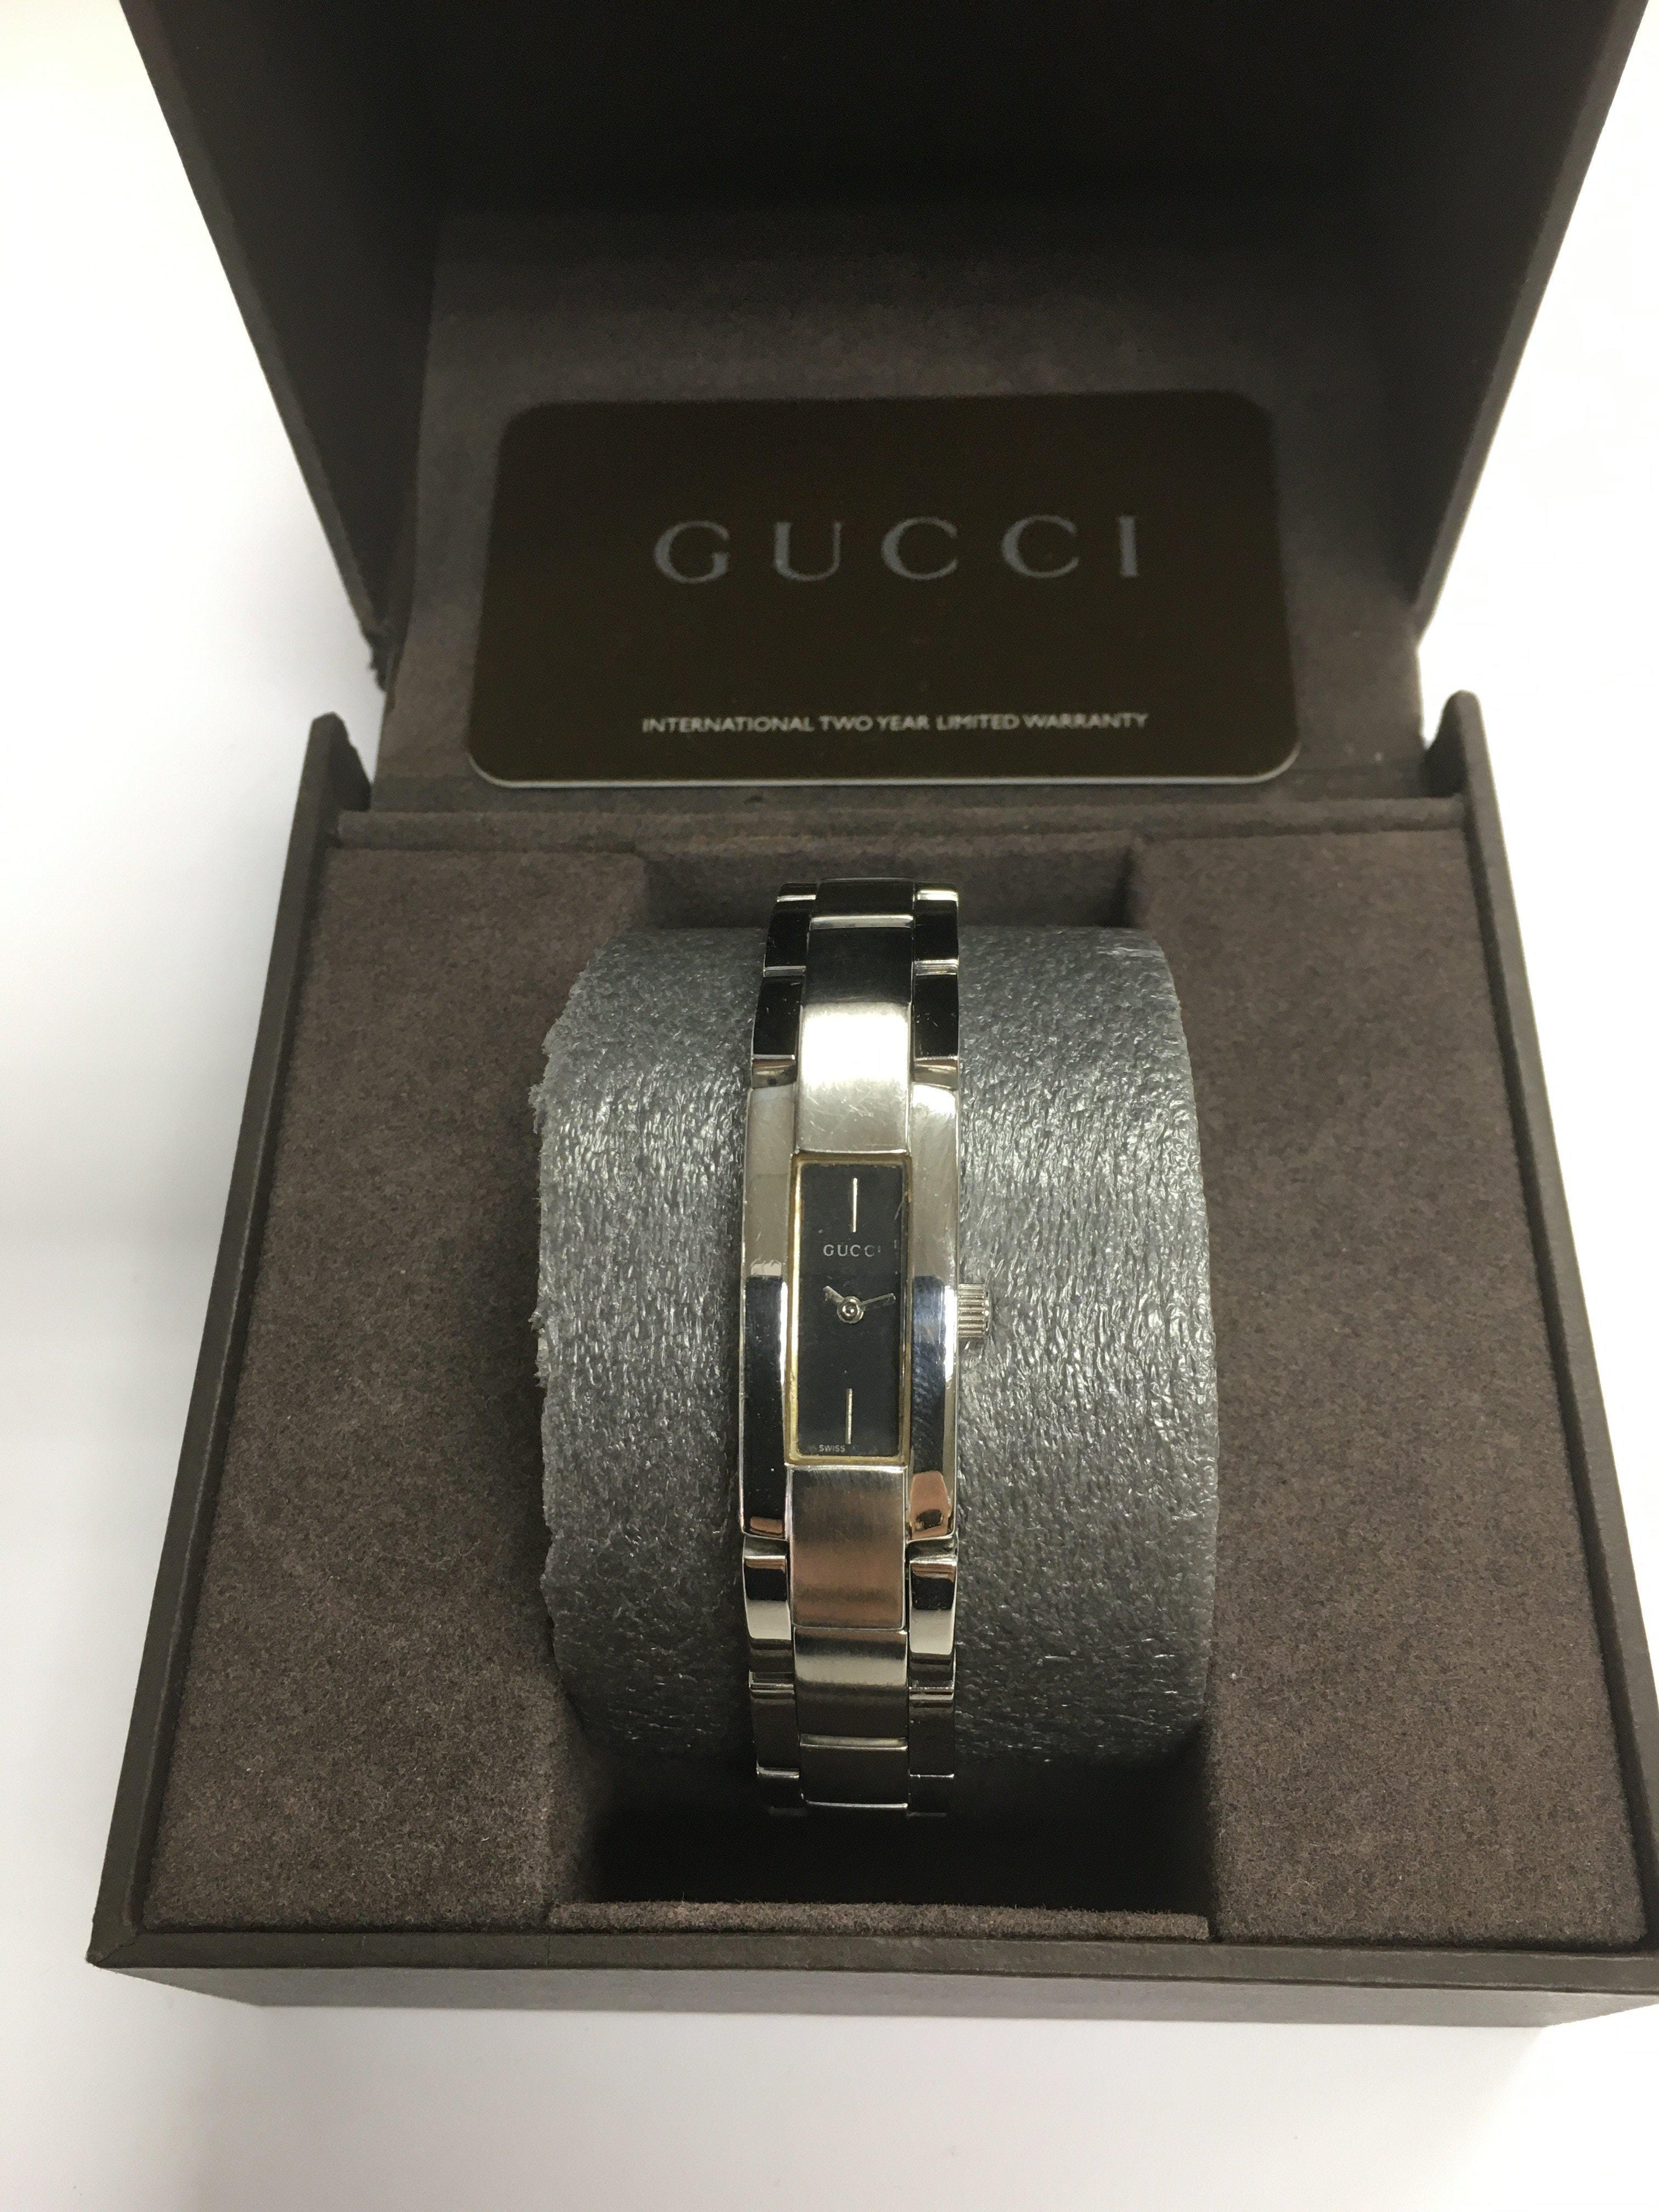 A boxed Gucci bangle watch.